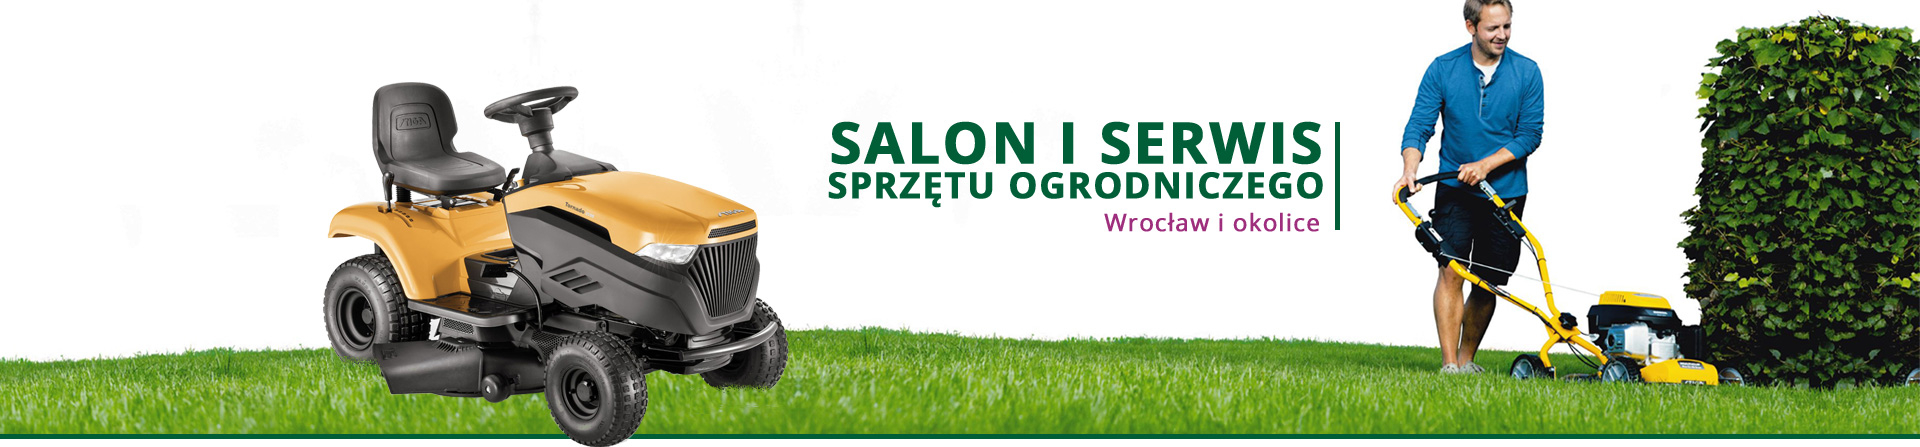 salon i serwis sprzętu ogrodniczego Wrocław